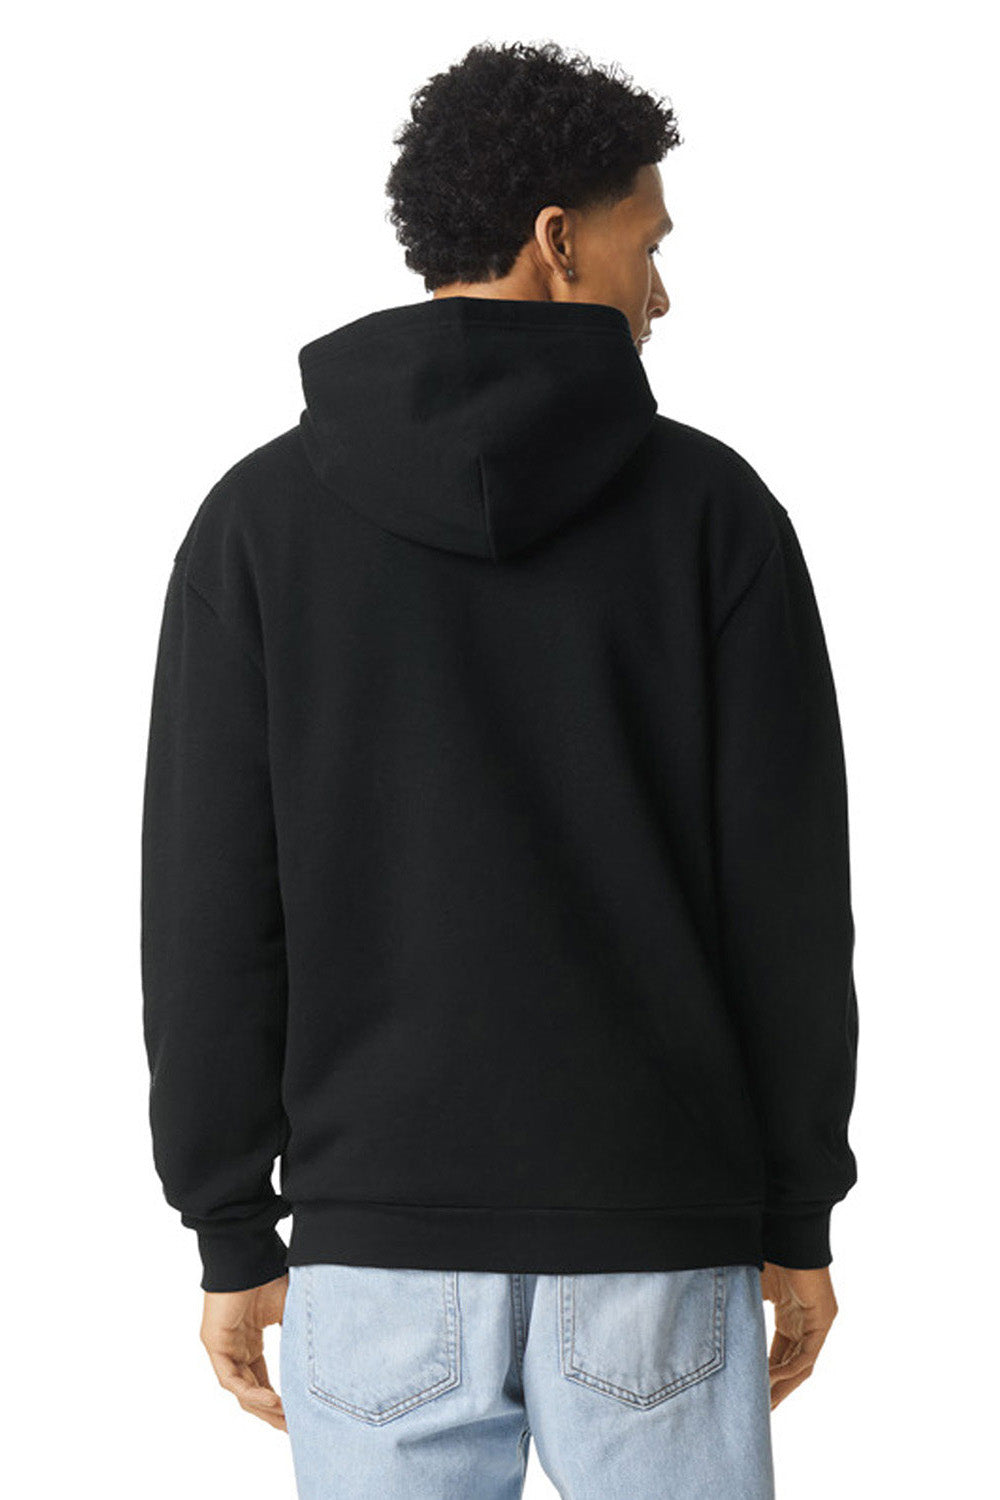 American Apparel RF497 Mens ReFlex Fleece Full Zip Hooded Sweatshirt Hoodie Black Model Back